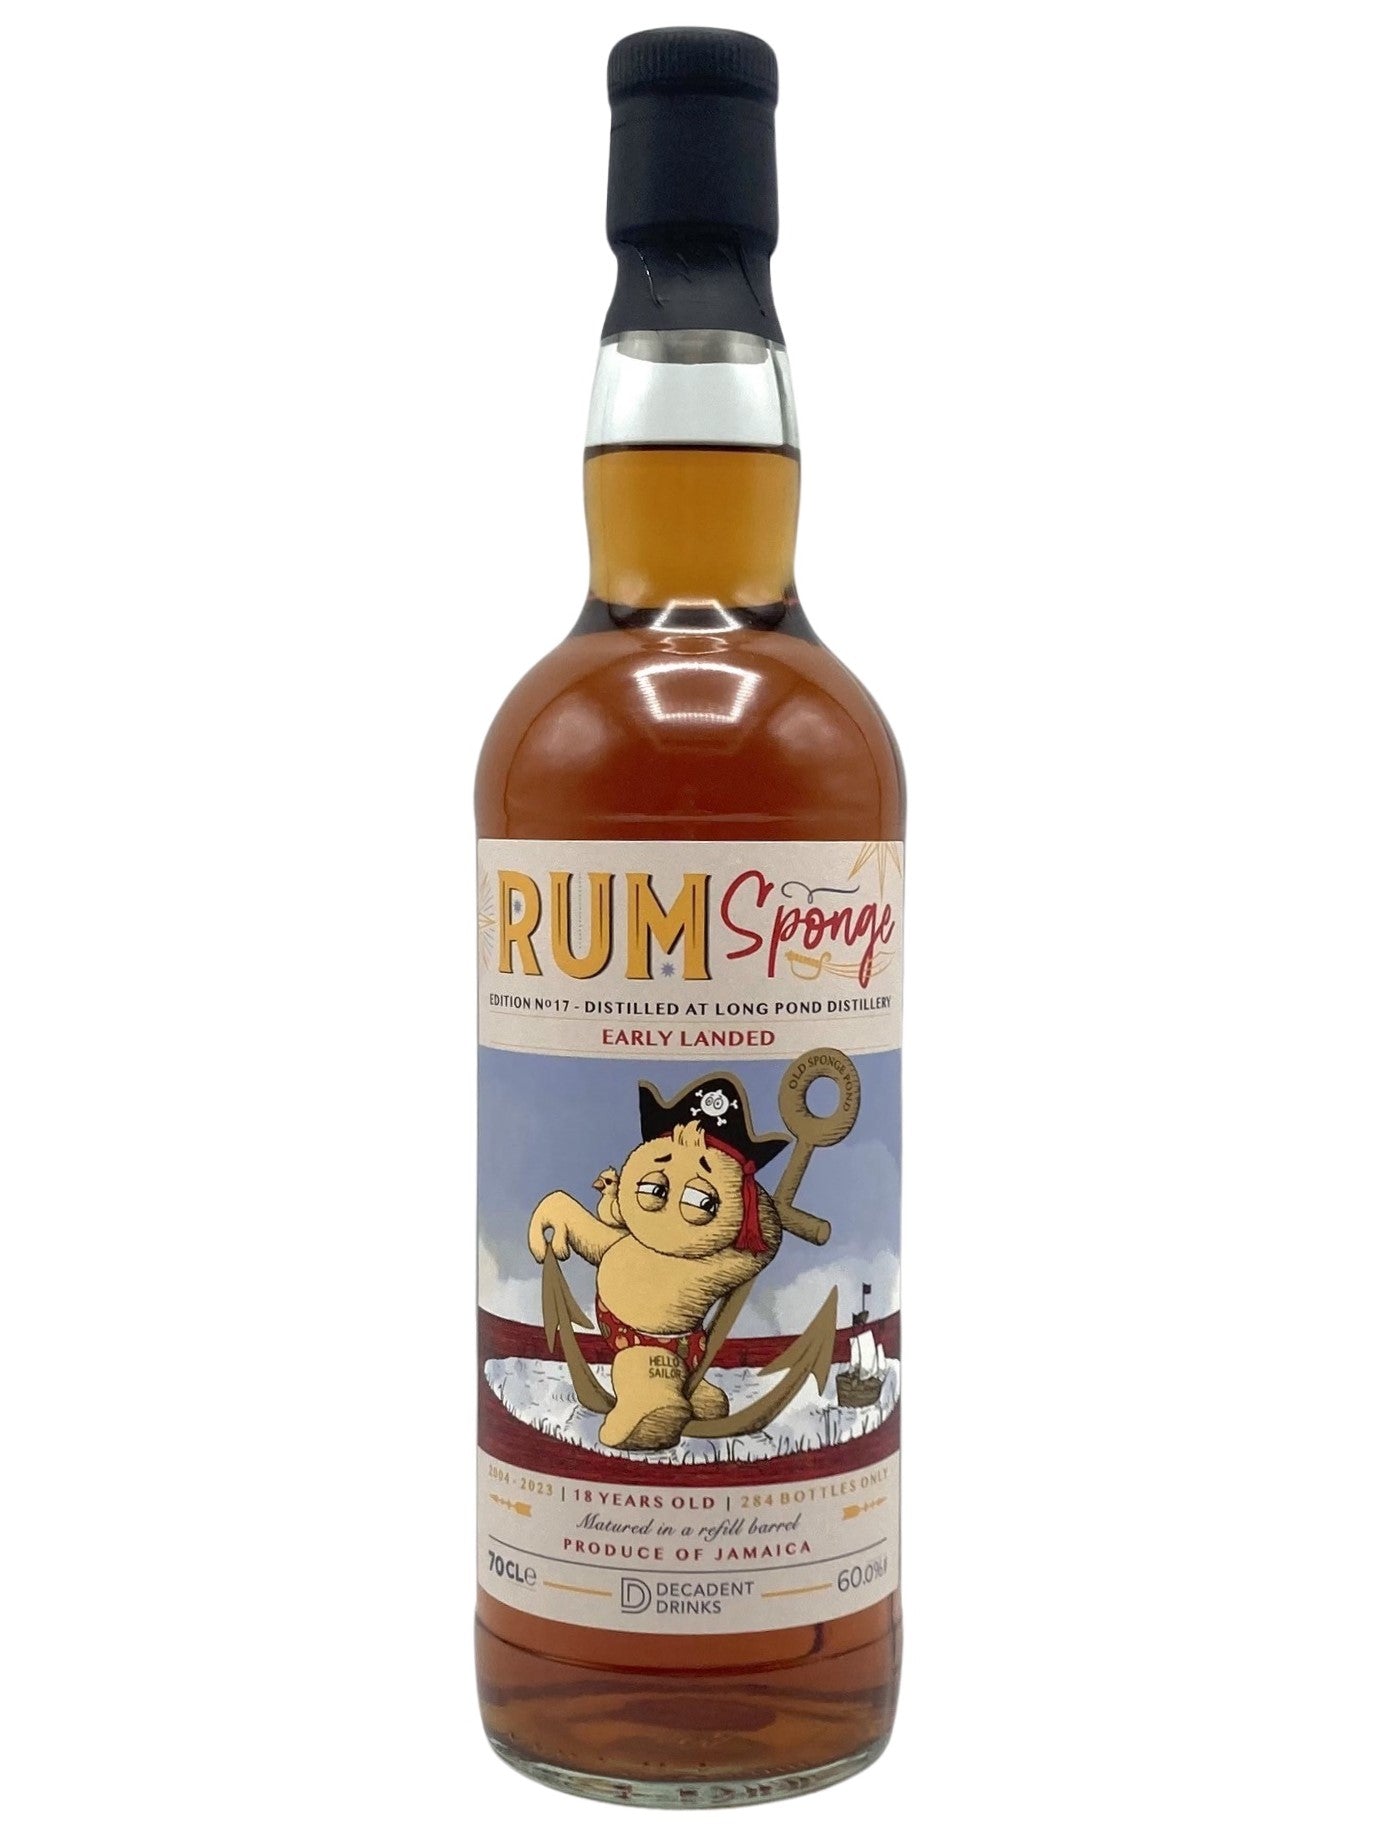 Whisky Sponge Long Pond Rum 2004